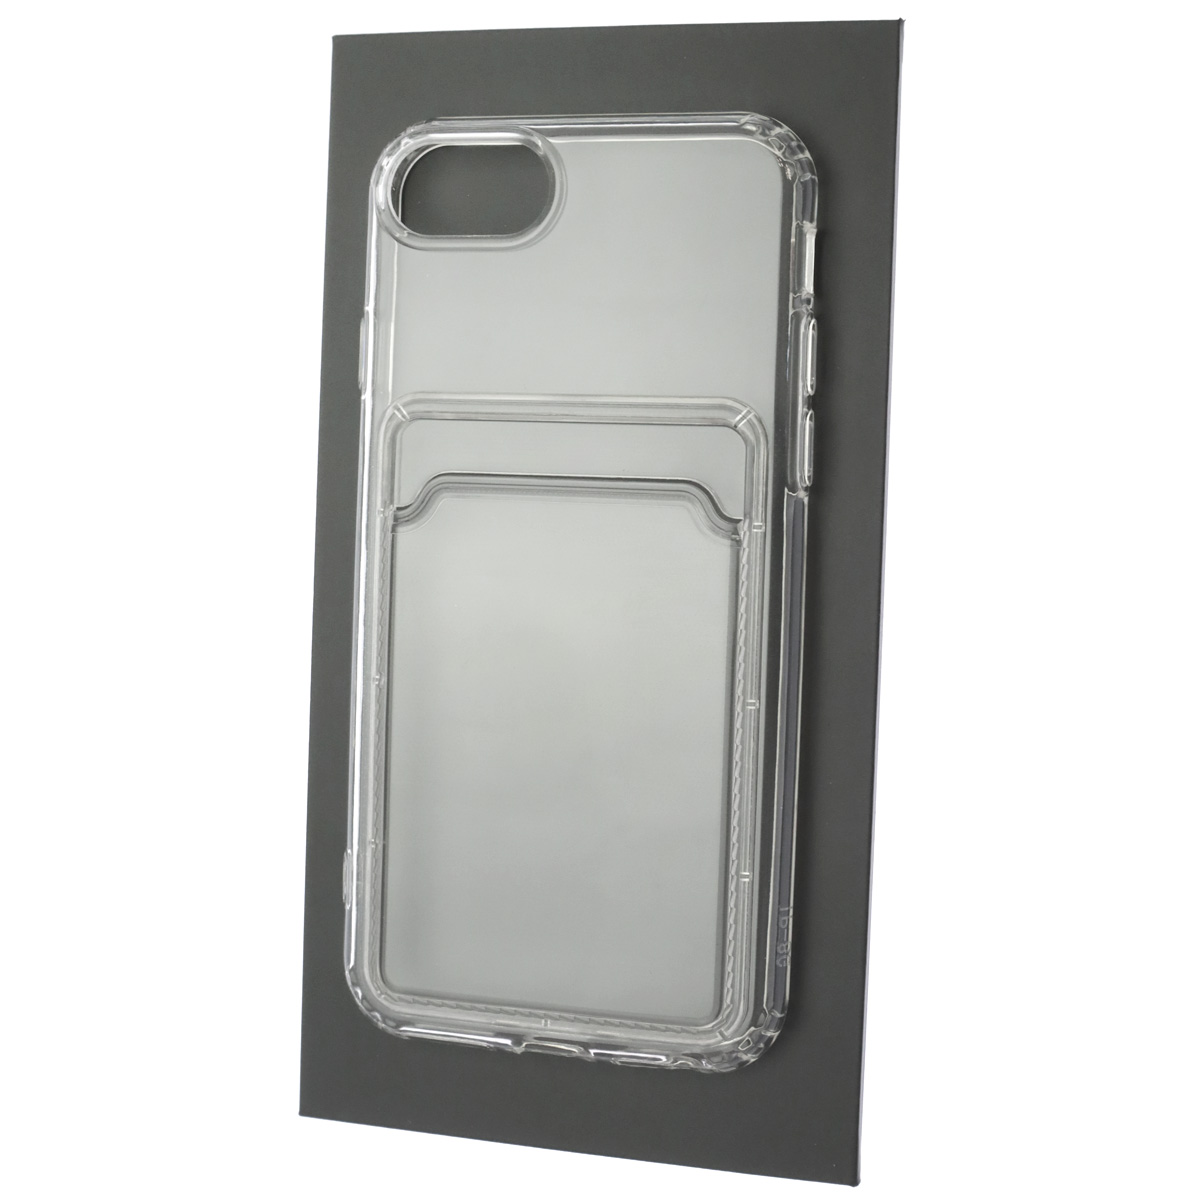 Чехол накладка CARD CASE для APPLE iPhone 6, iPhone 6G, iPhone 6S, силикон, отдел для карт, цвет прозрачный